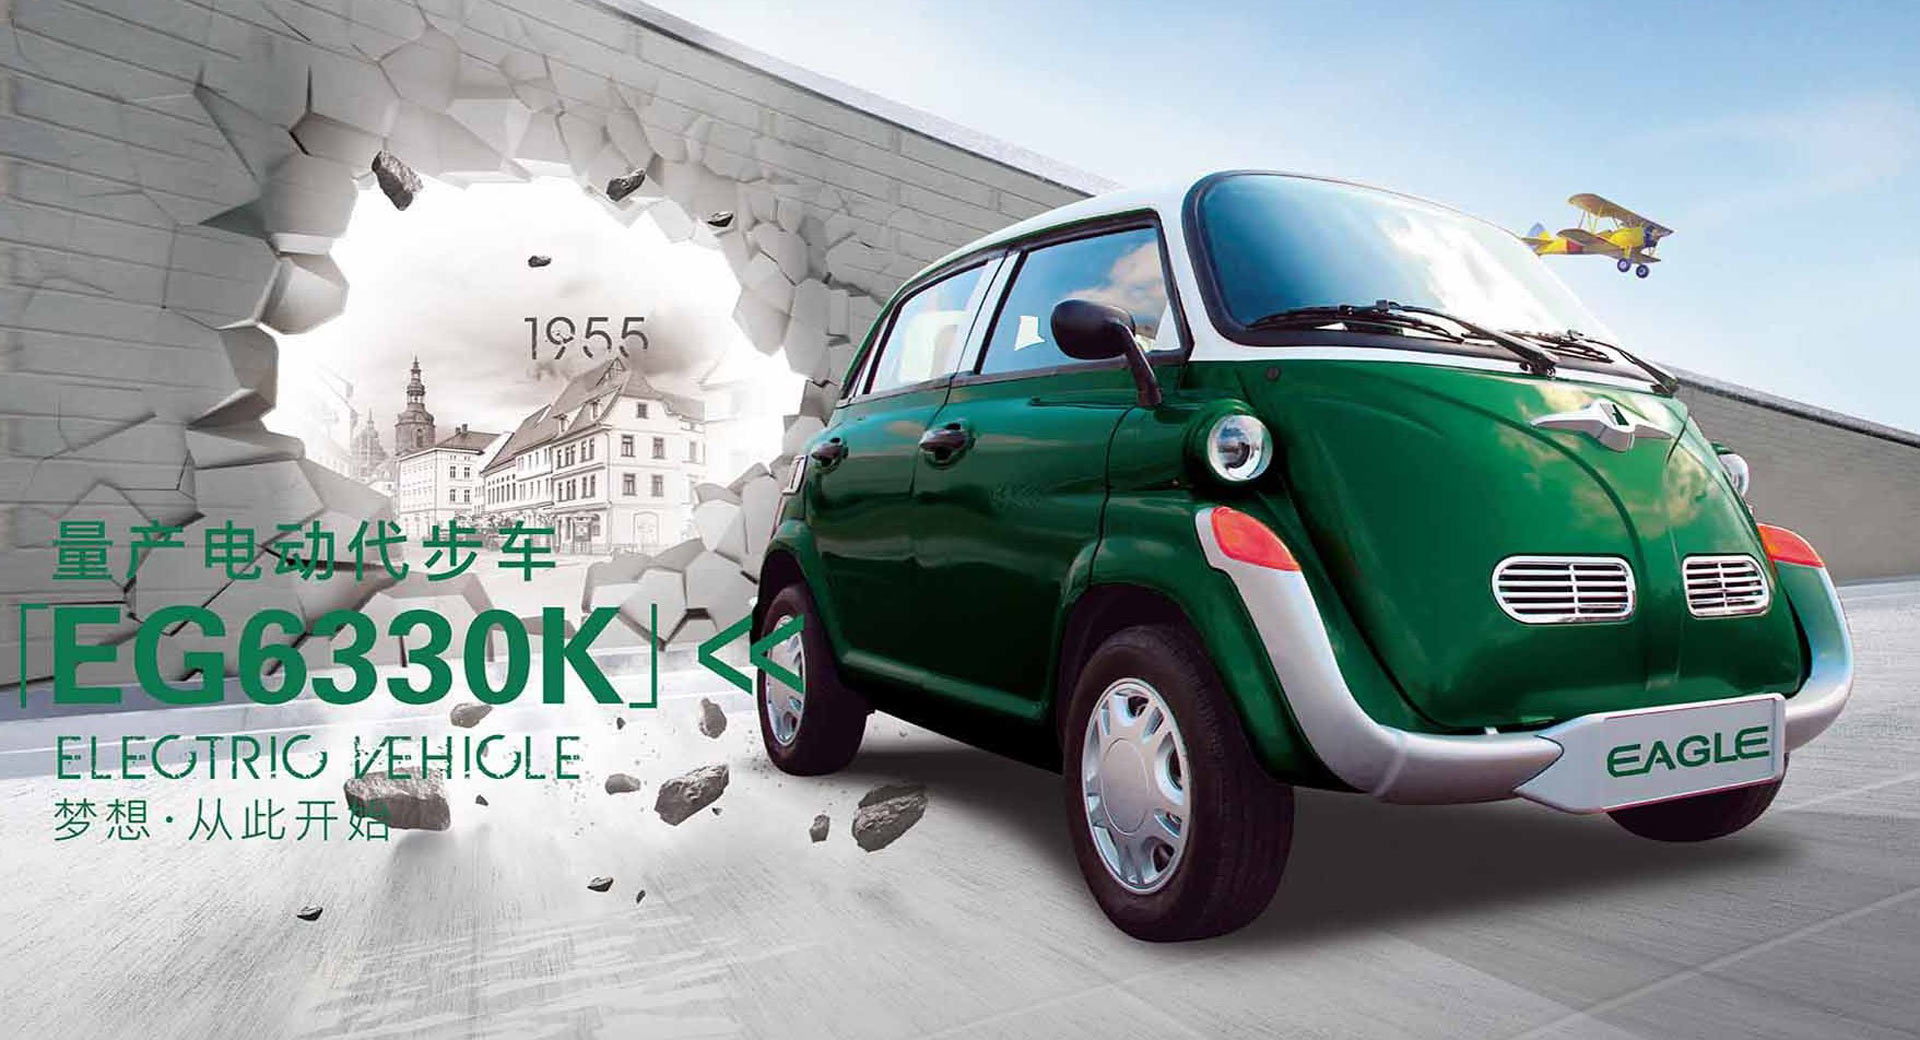 “بالصور” شركة سيارات صينية صنعت بي إم دبليو إيسيتا مقلّدة